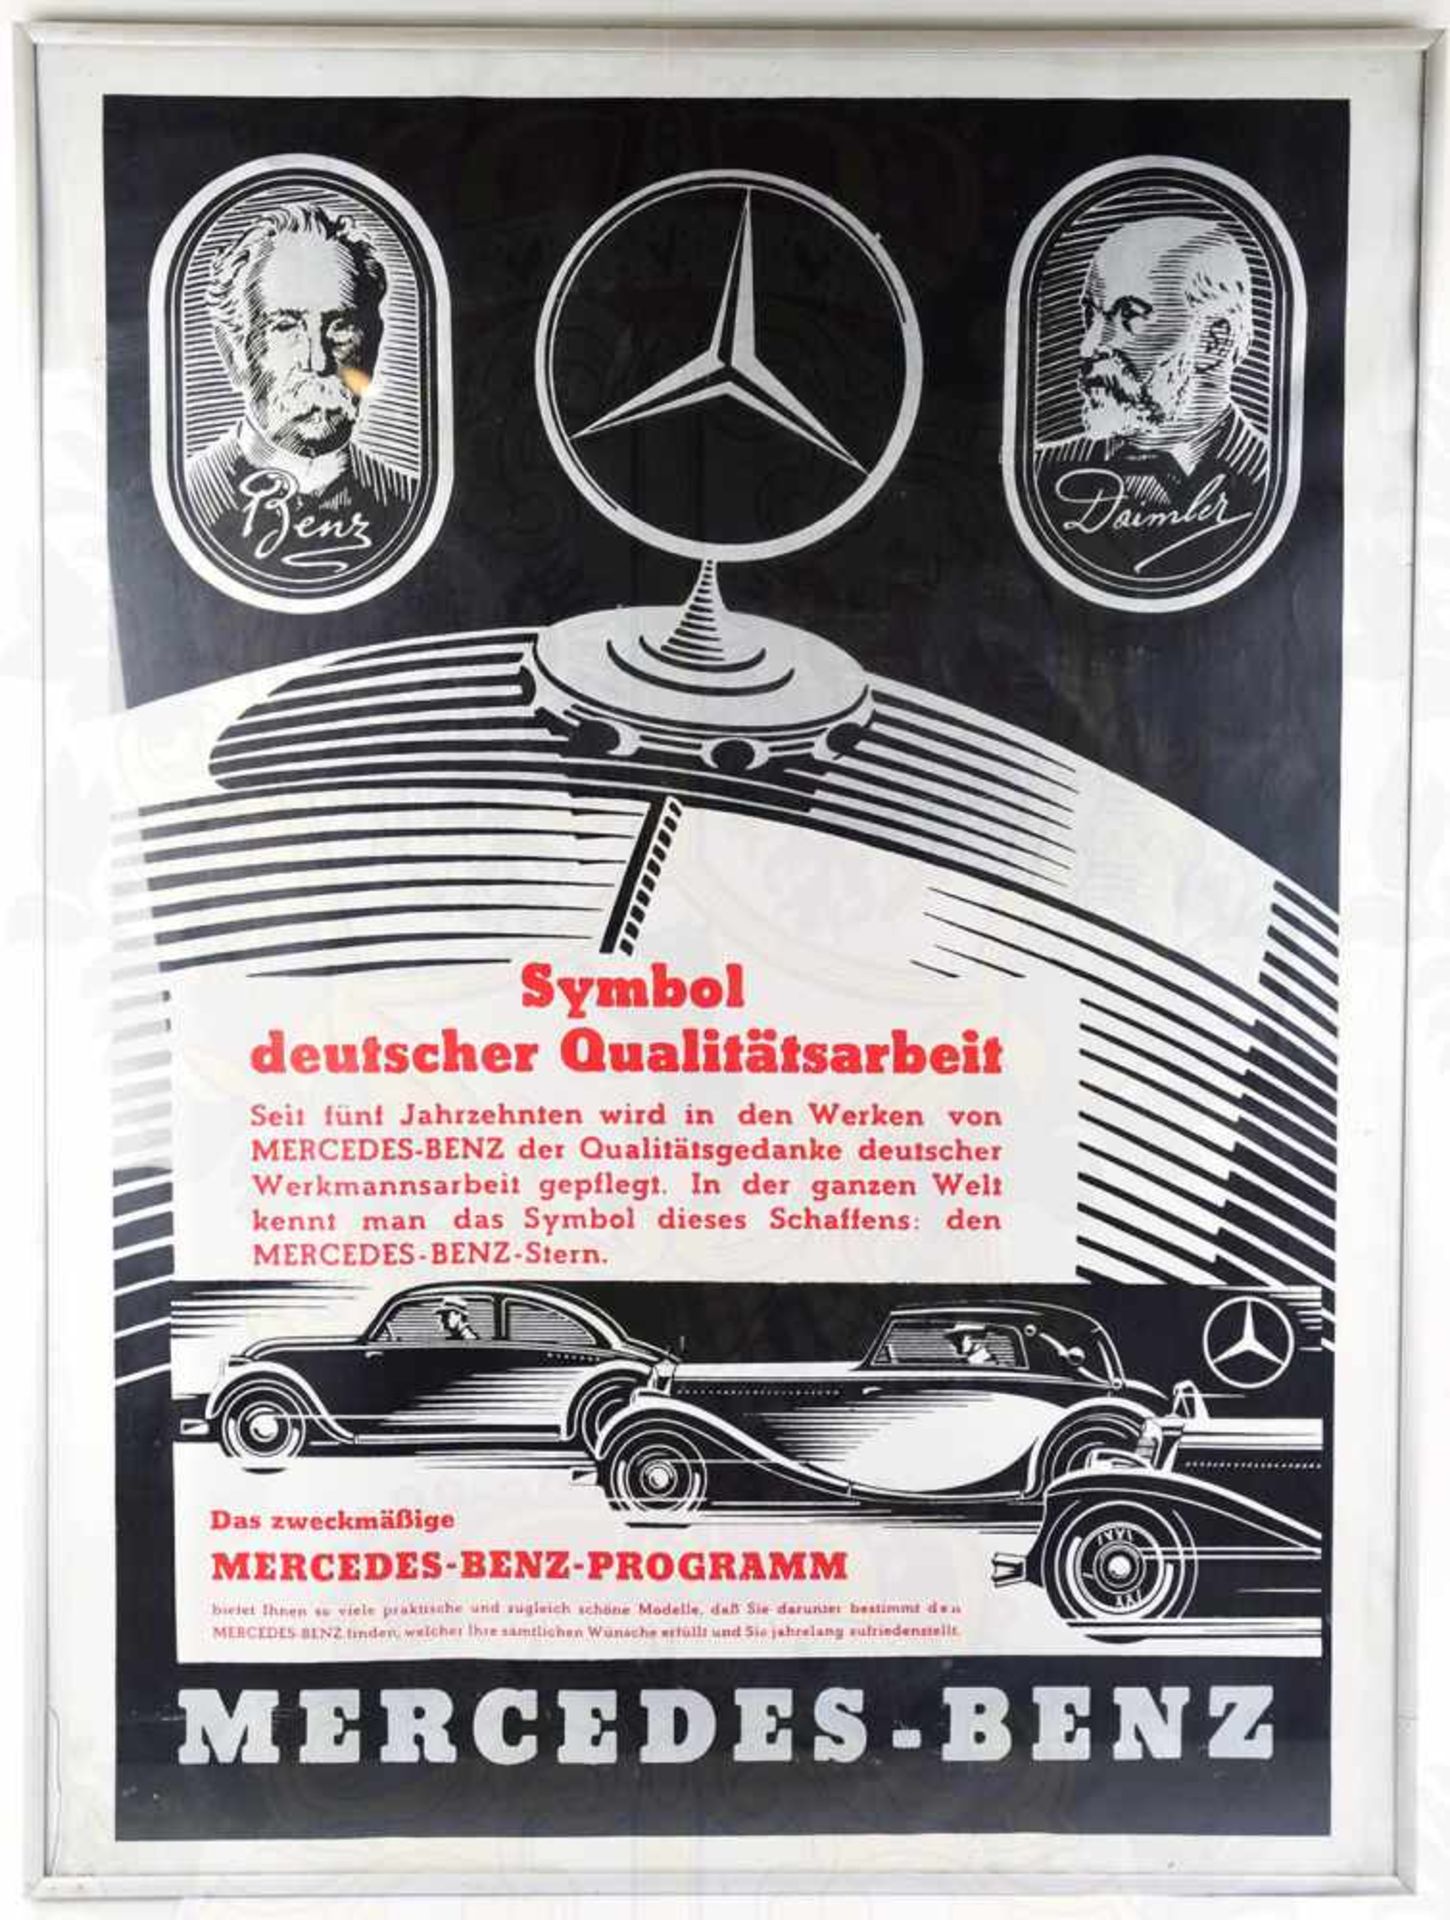 MERCEDES-BENZ WERBEPLAKAT 1936, „Symbol deutscher Qualitätsarbeit“, neuzeitlicher Druck, s/w/r